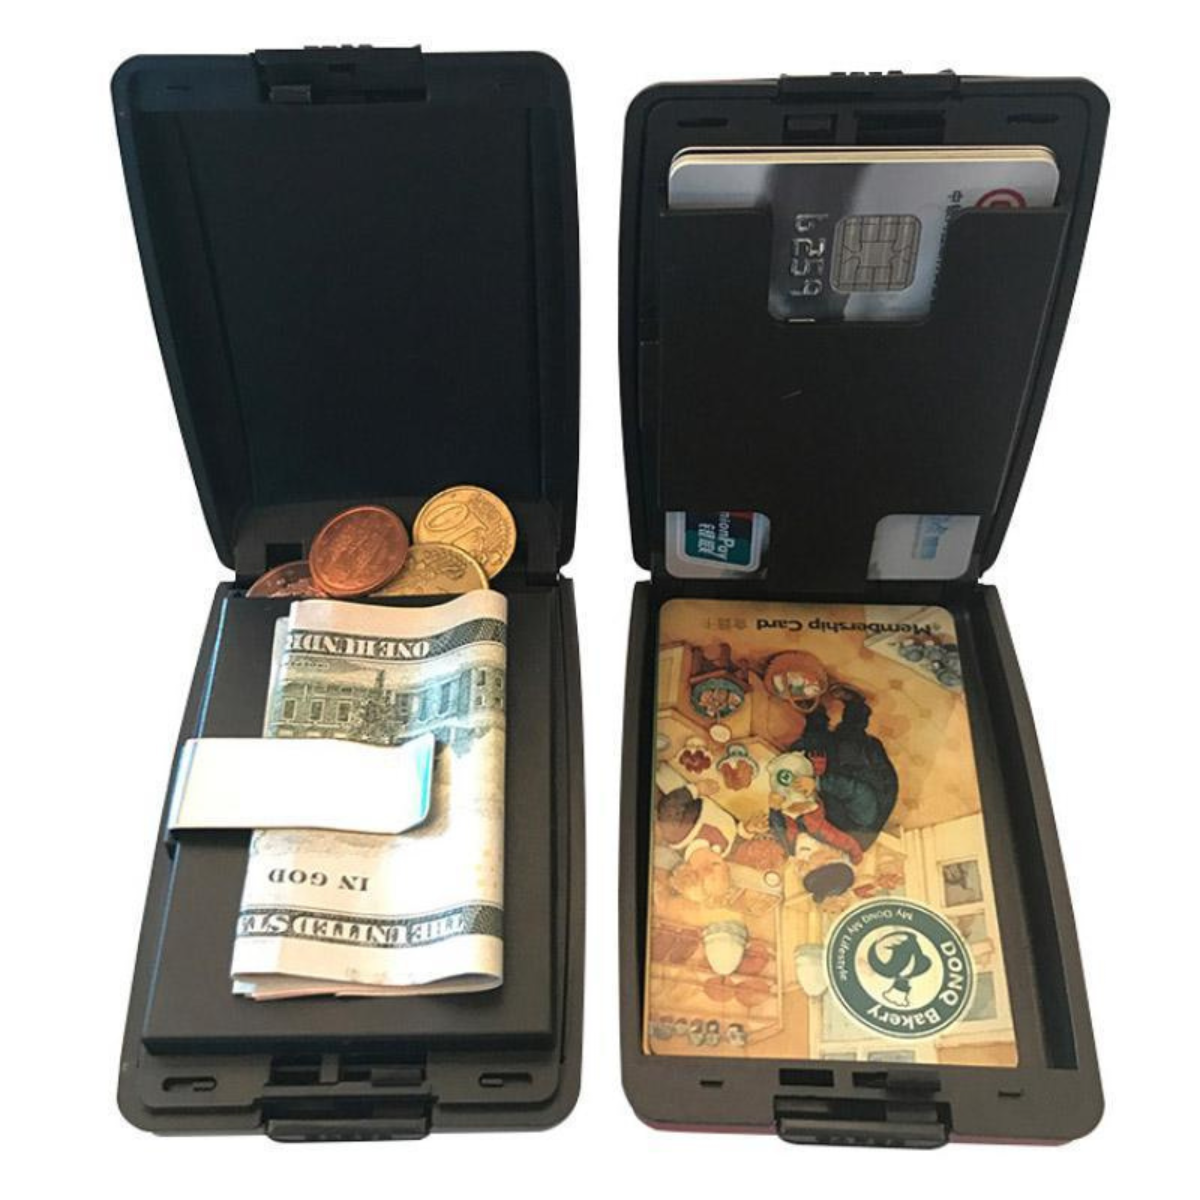 Billetera de depósito y retirada segura RFID